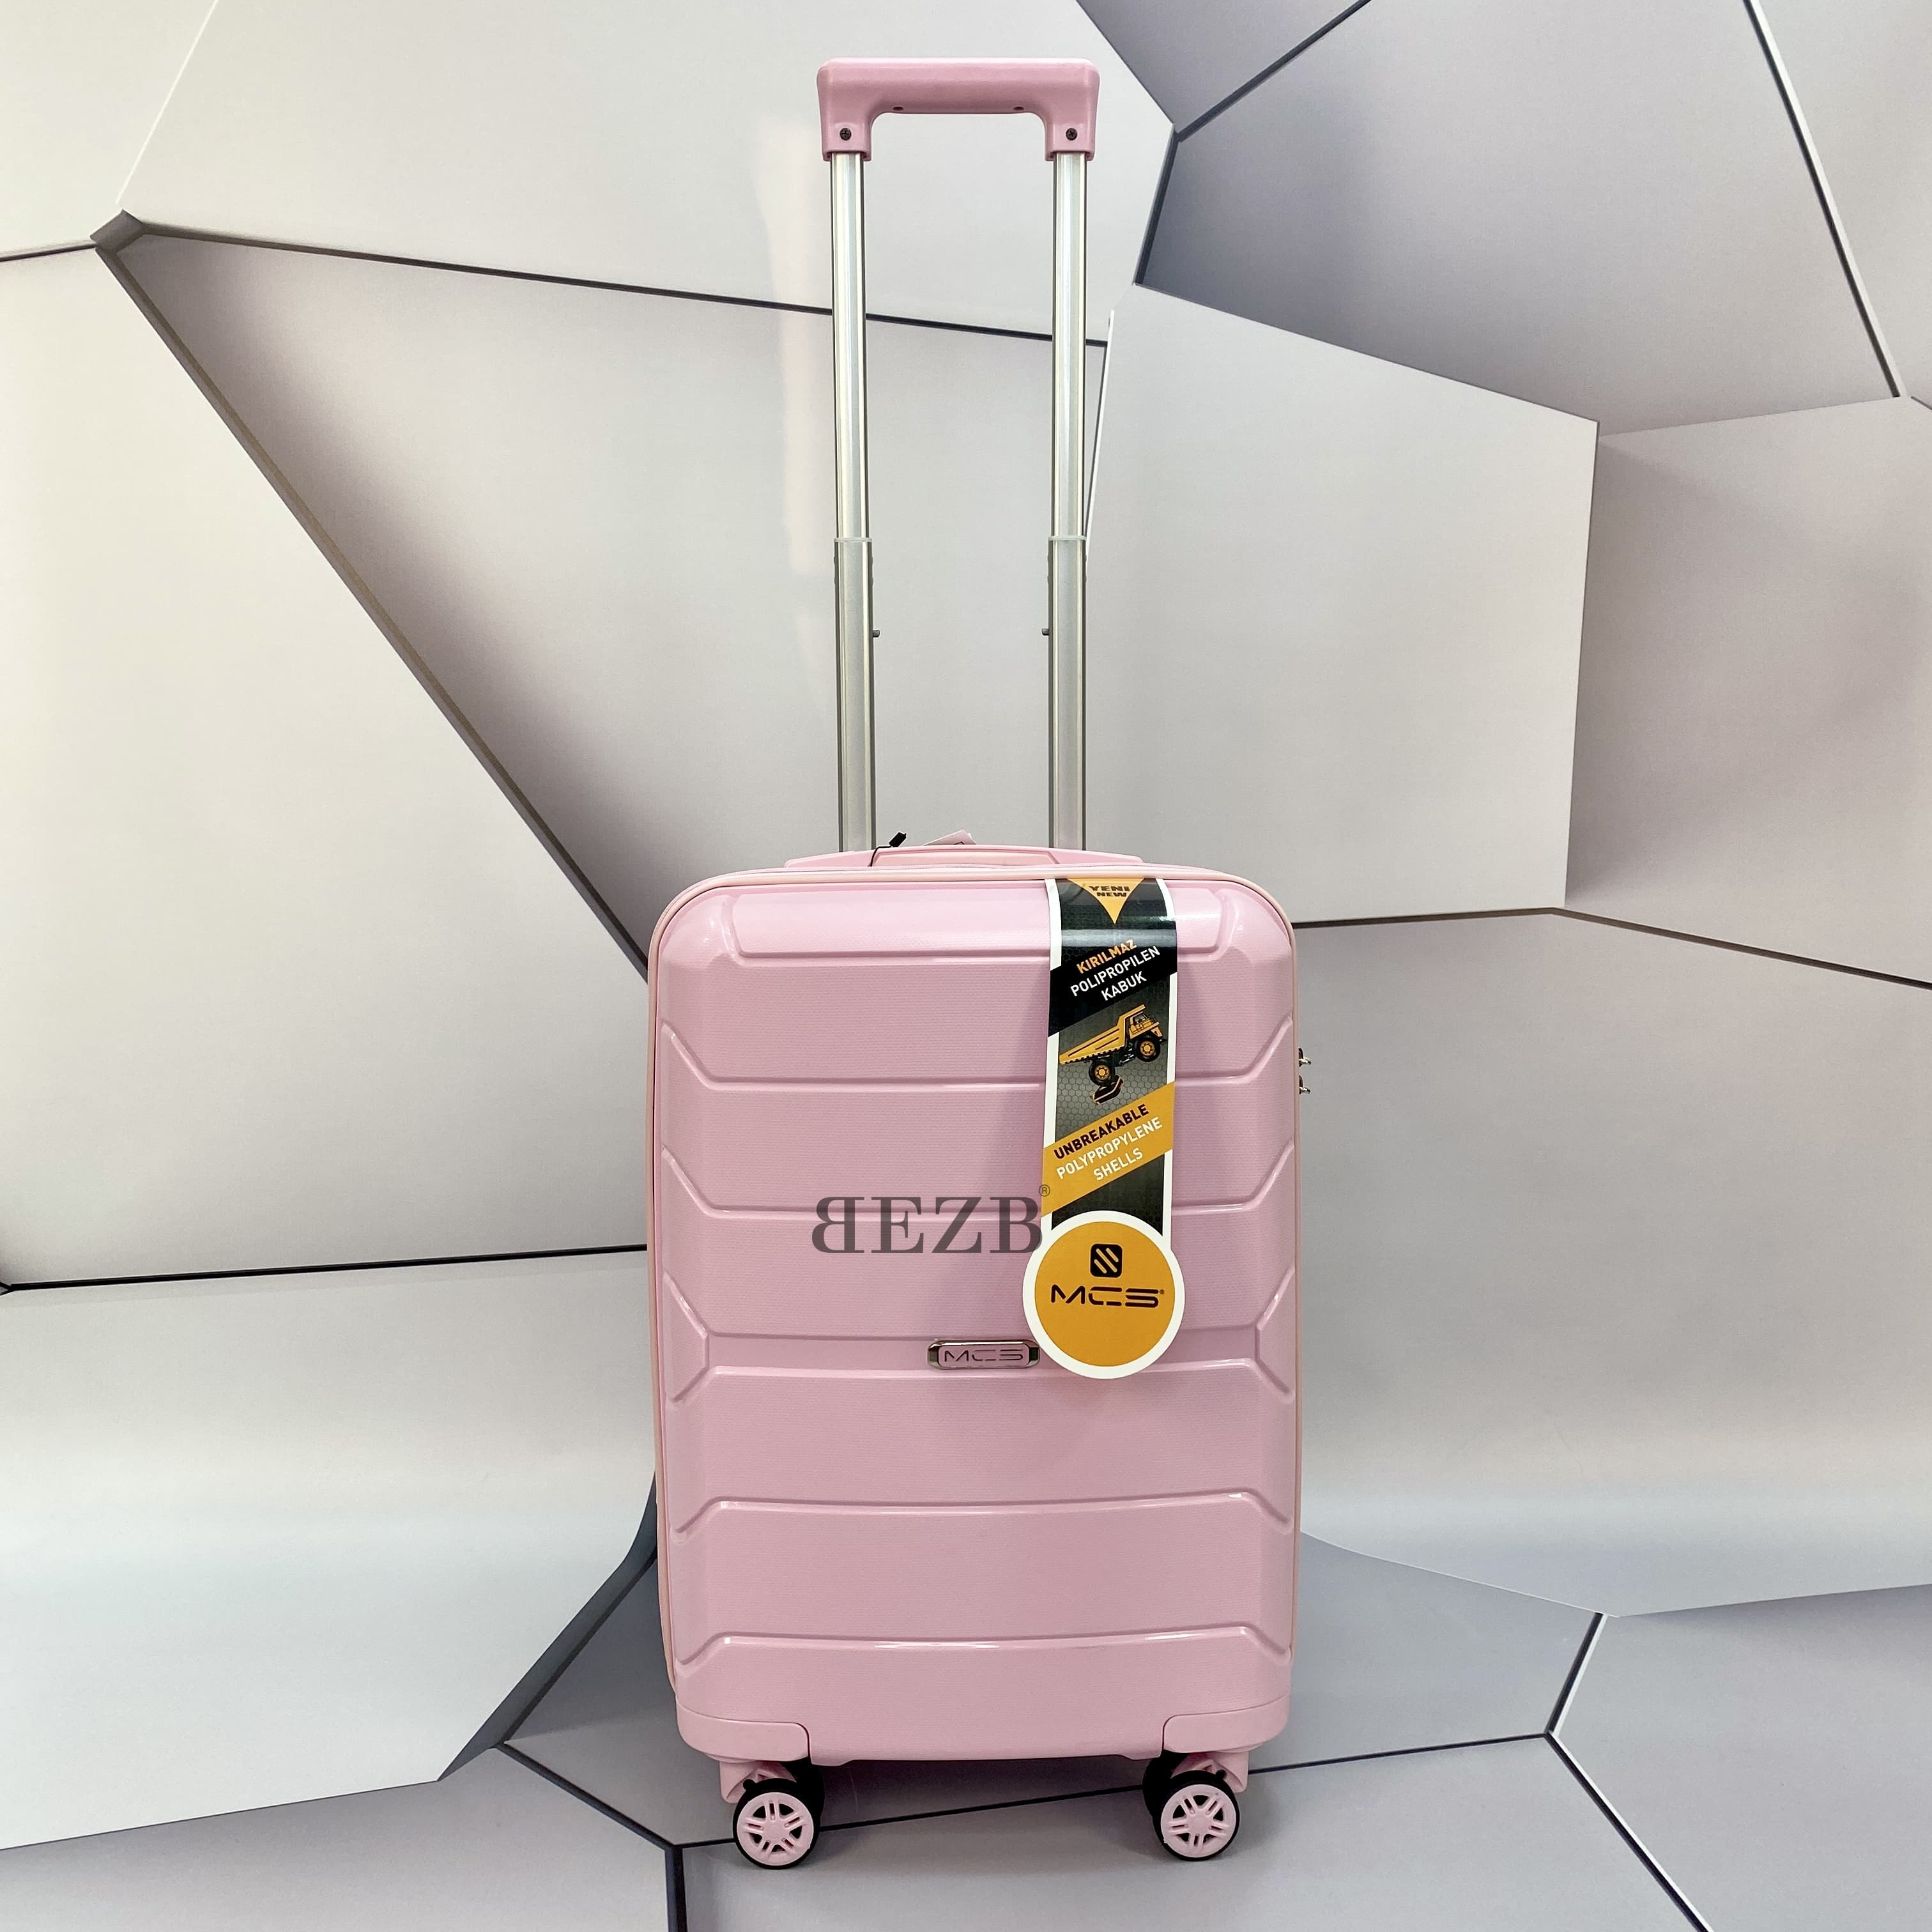 Маленький чемодан для ручьной клади из полипропилена MCS V366 S POWDER! Для 8-10 кг! - 1